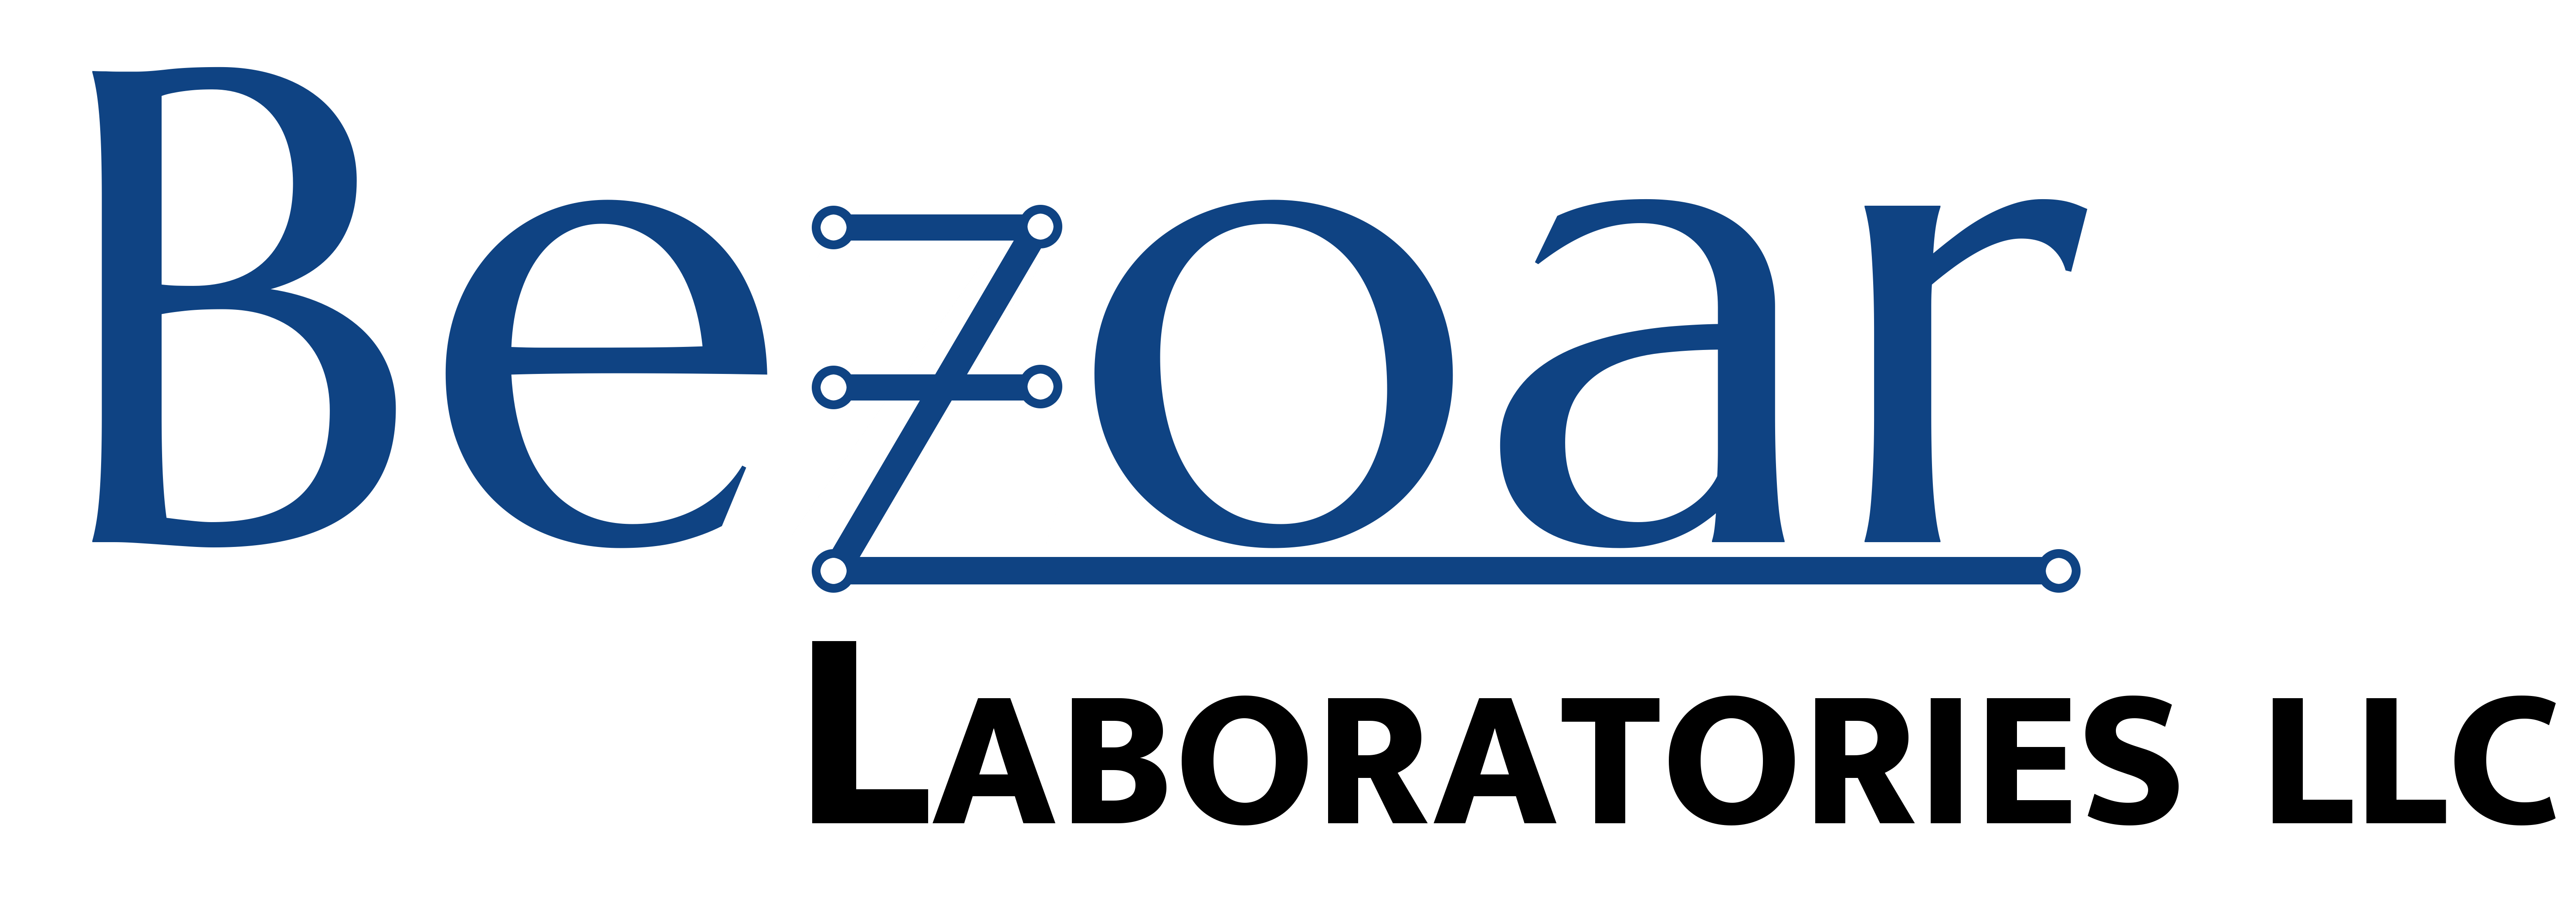 Bezoar logo